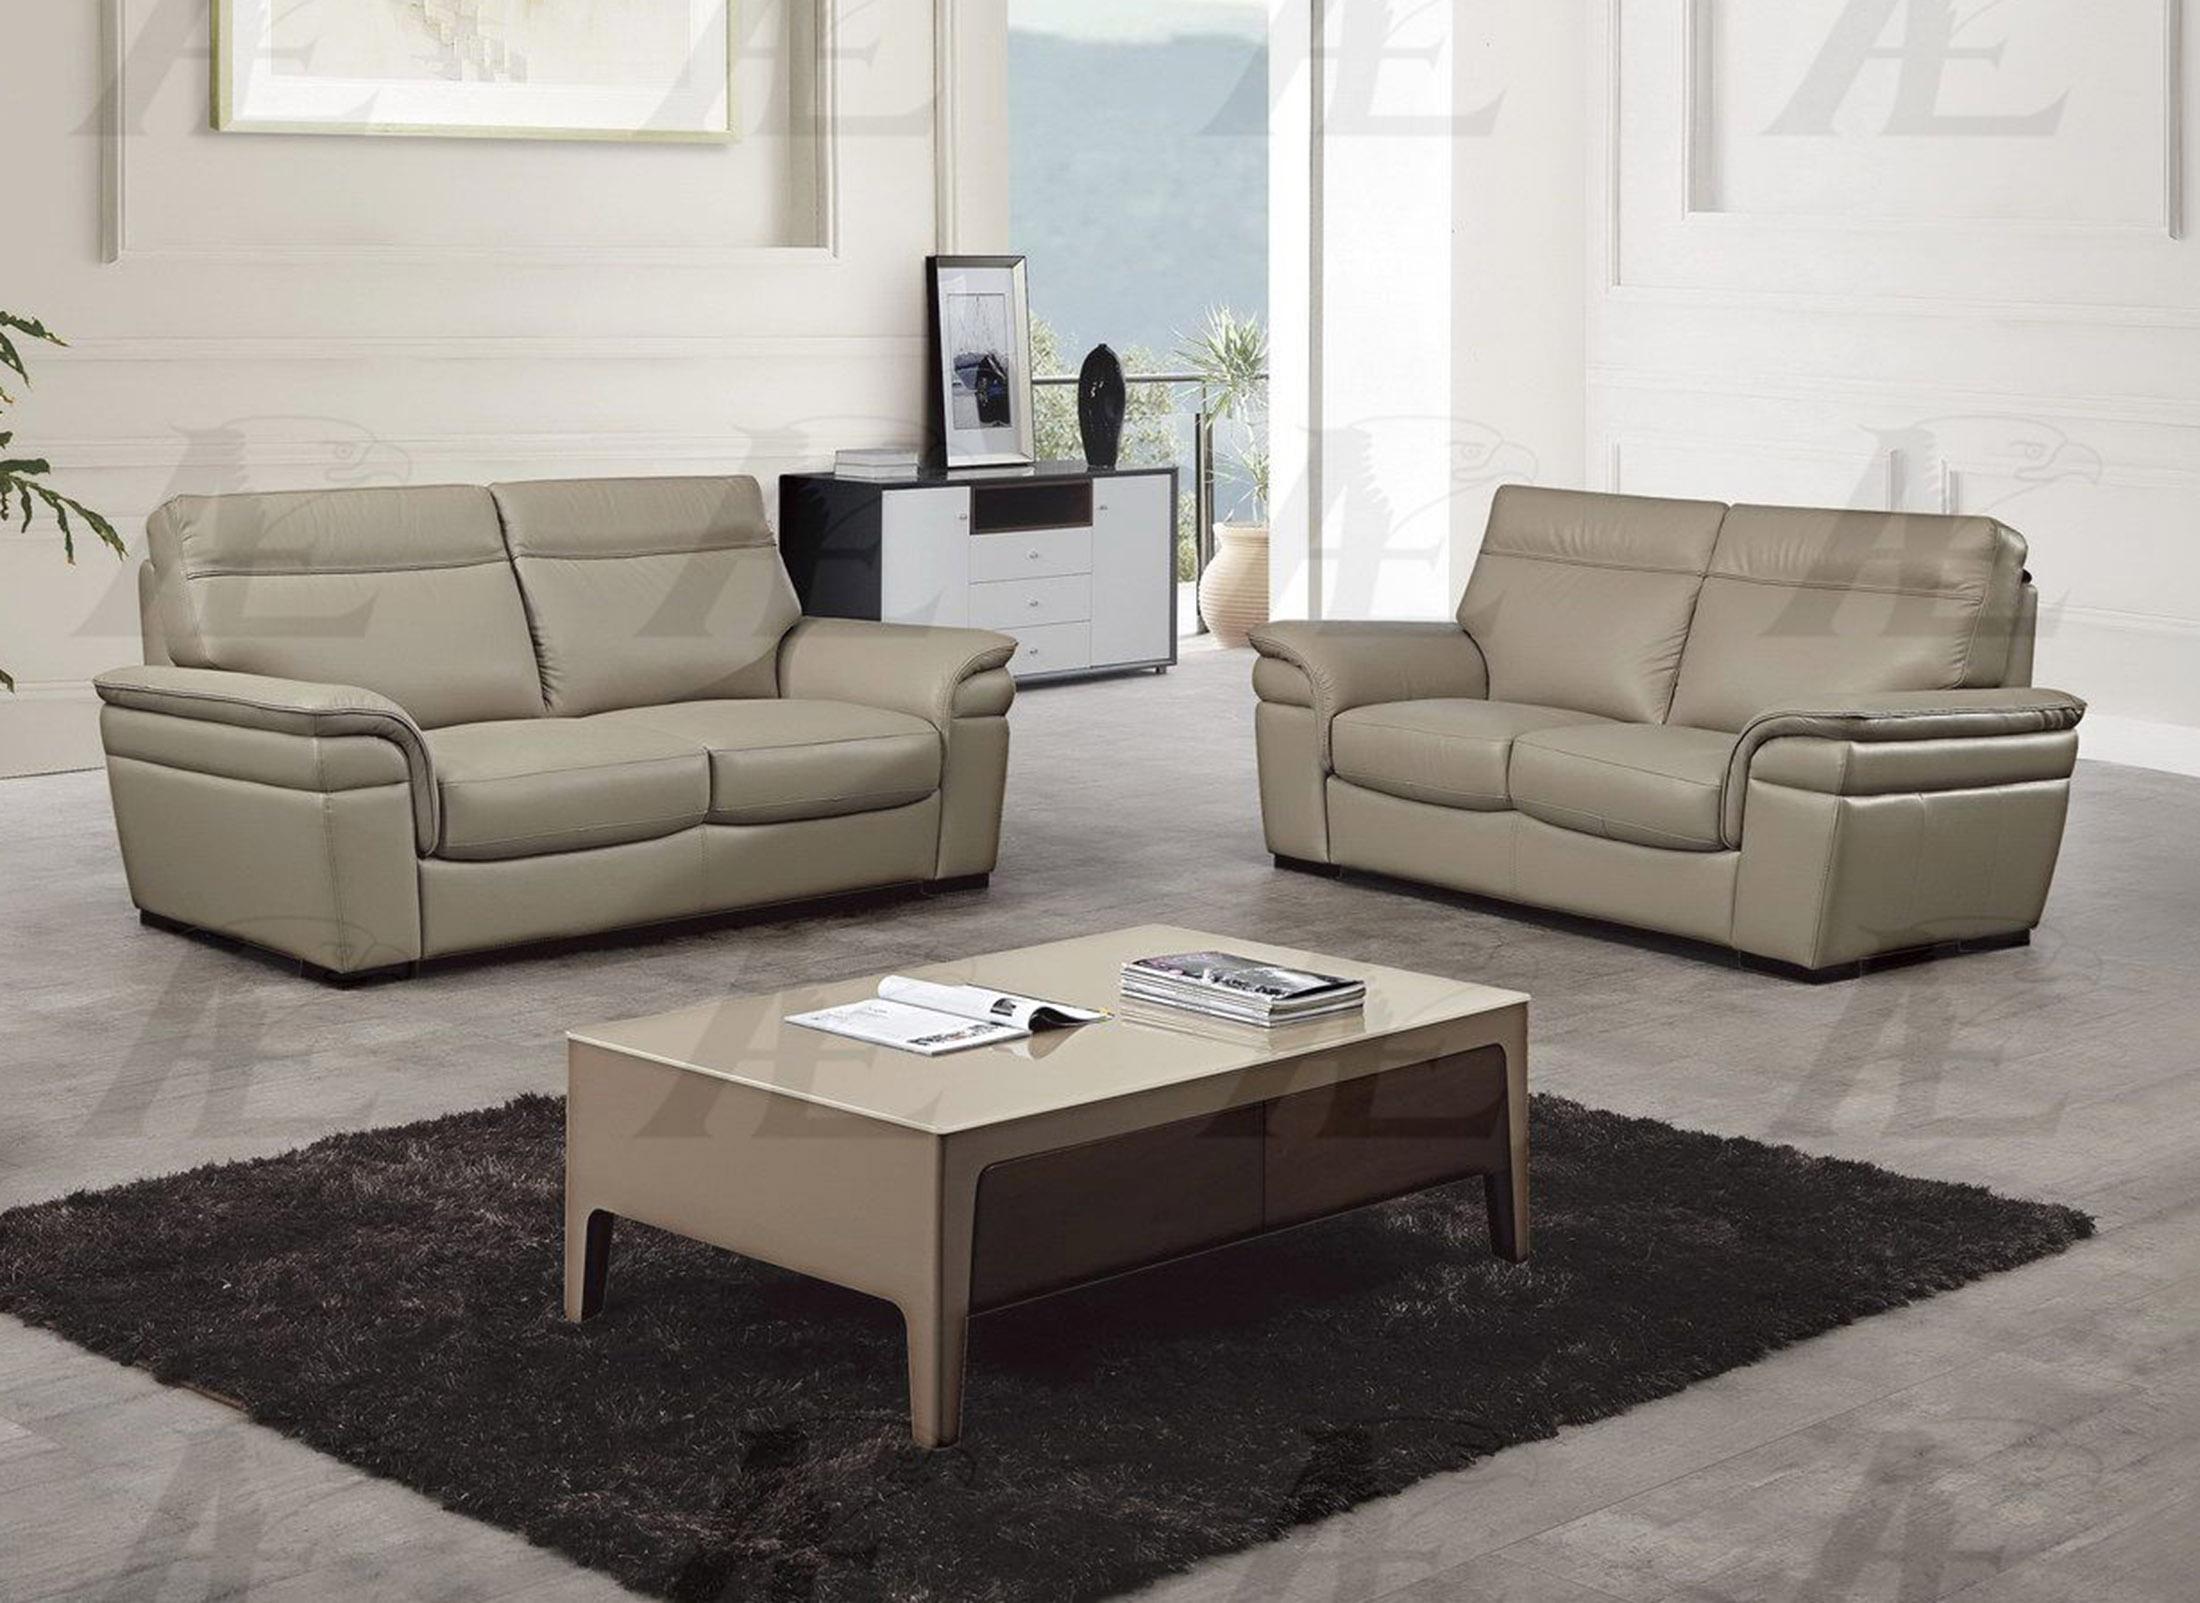 

    
American Eagle Furniture EK020-TAN-SF Sofa Tan EK020-TAN-SF
